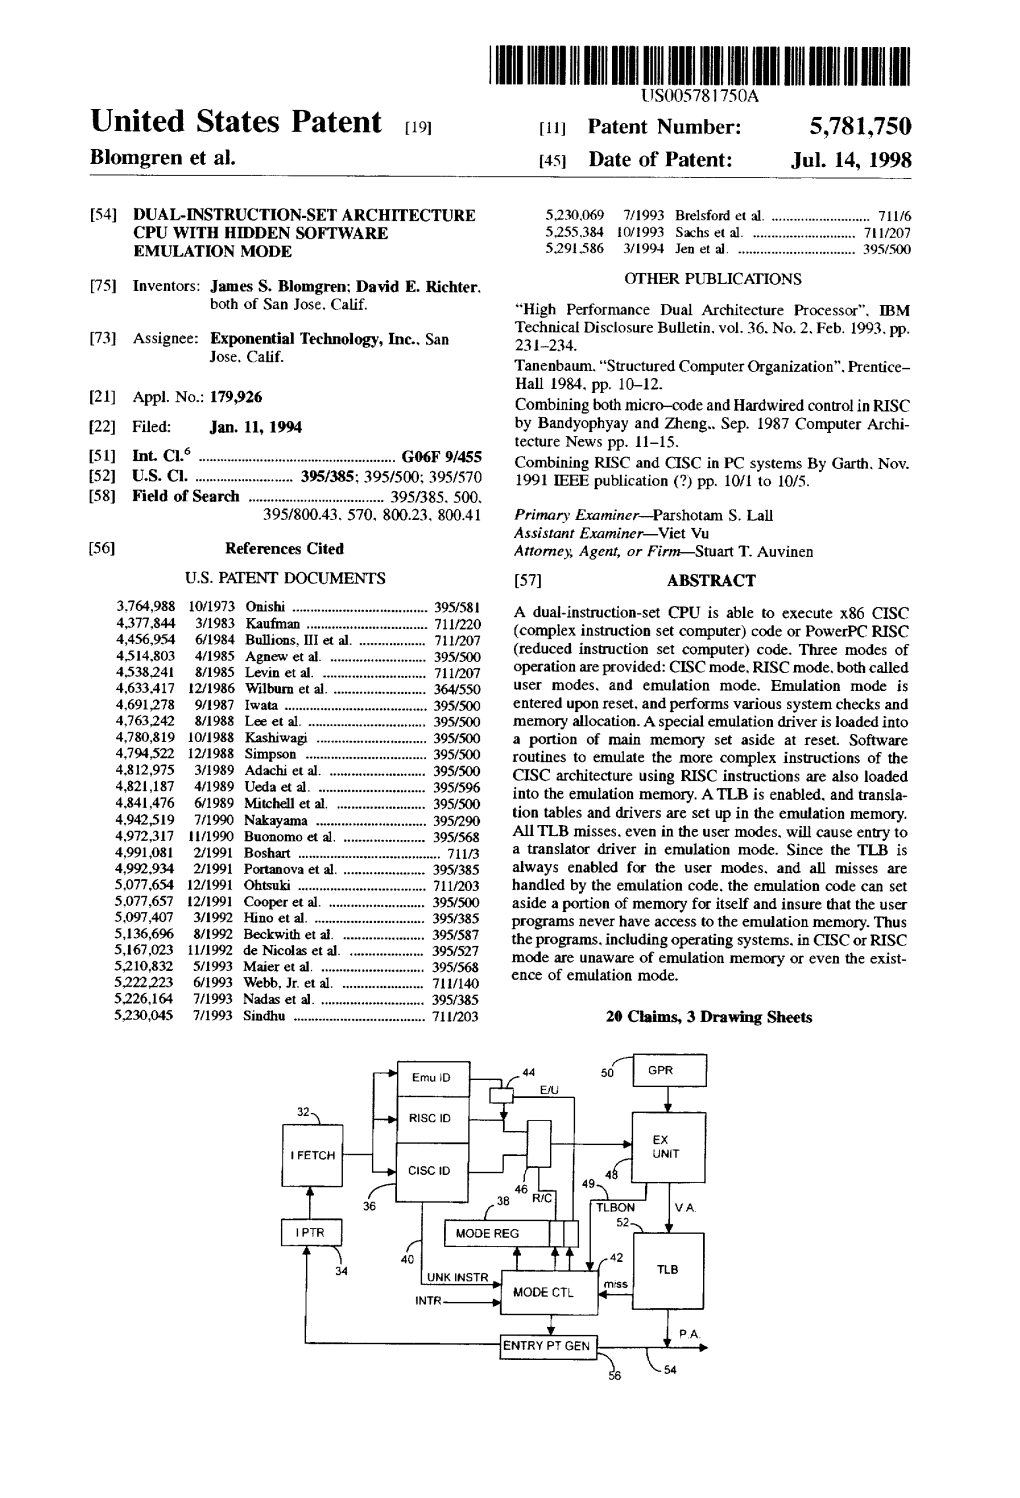 United States Patent 19 11 Patent Number: 5,781,750 Blomgren Et Al